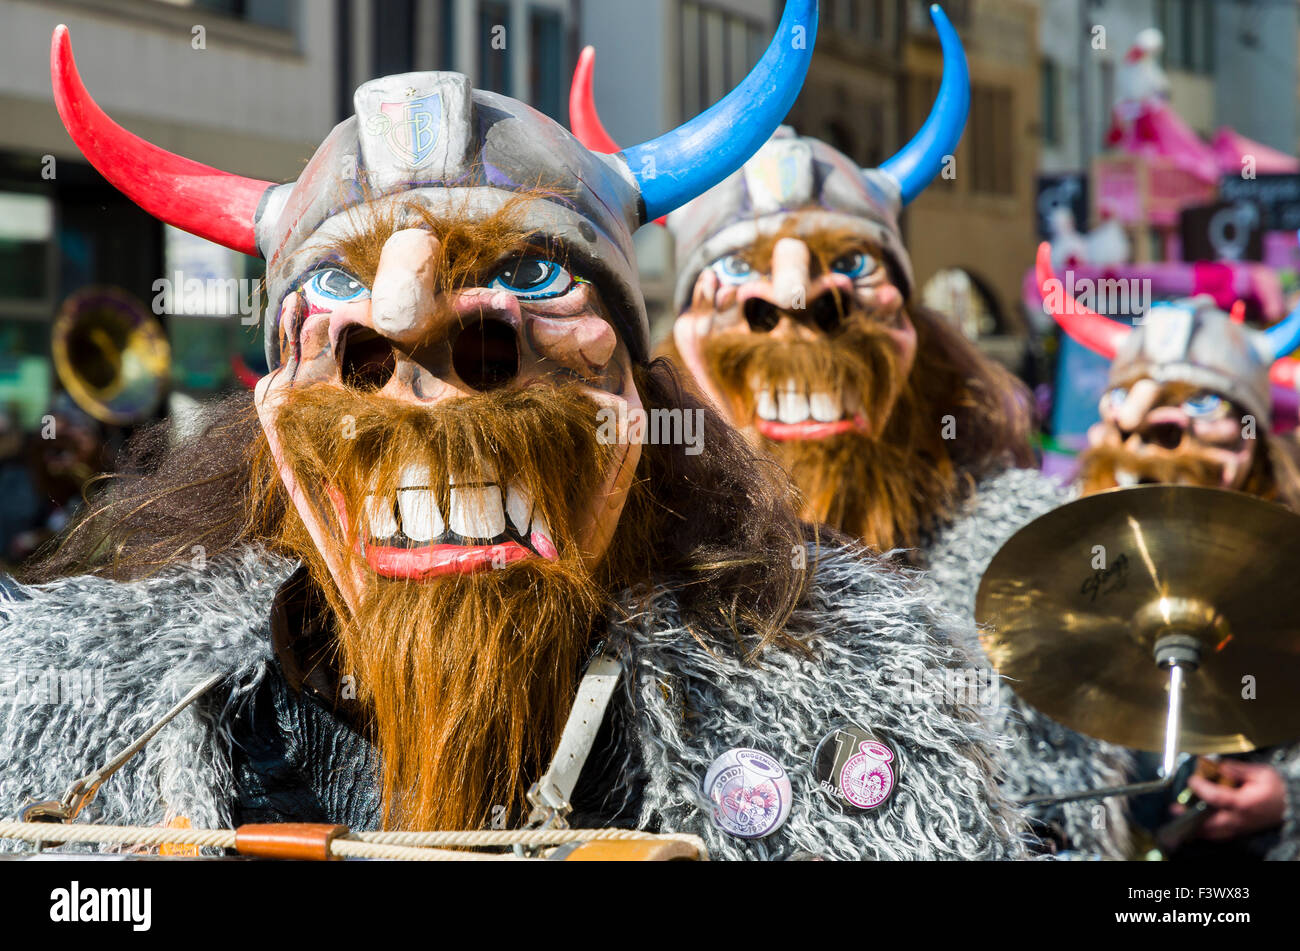 La grande procession de basler fasnet est l'un des événements les plus spectaculaires, les bandes masquées jouent le célèbre guggenmusic Banque D'Images